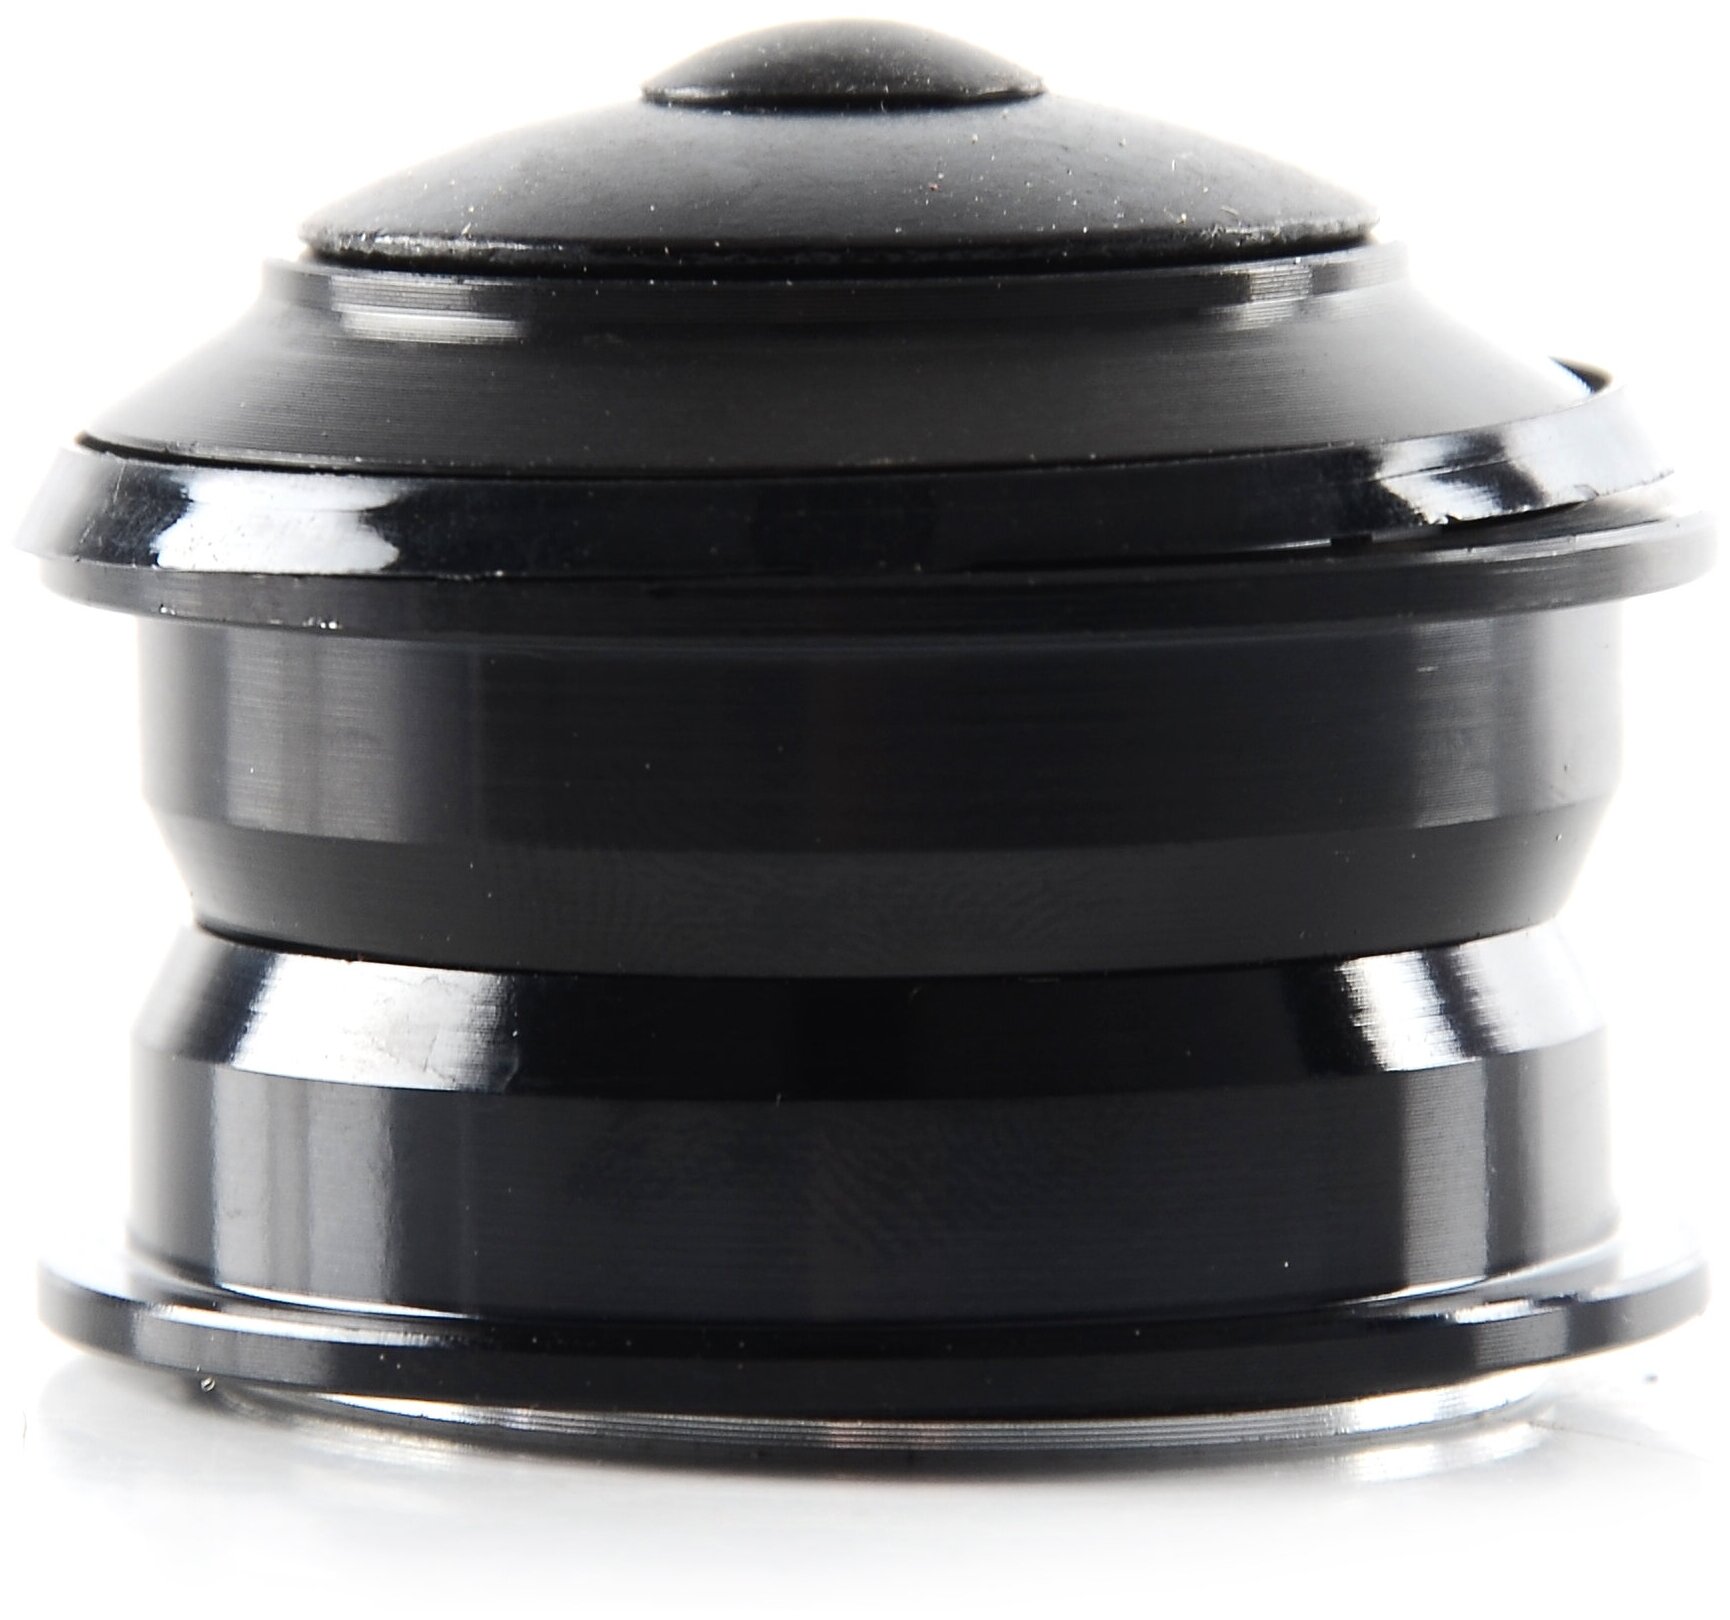 Рулевая колонка полуинтегрированная KENLI AM-B310, 1-1/8", A-Head, полуинтегрированная, алюминиевые чашки (диаметр 44мм), пром подшипники, черная